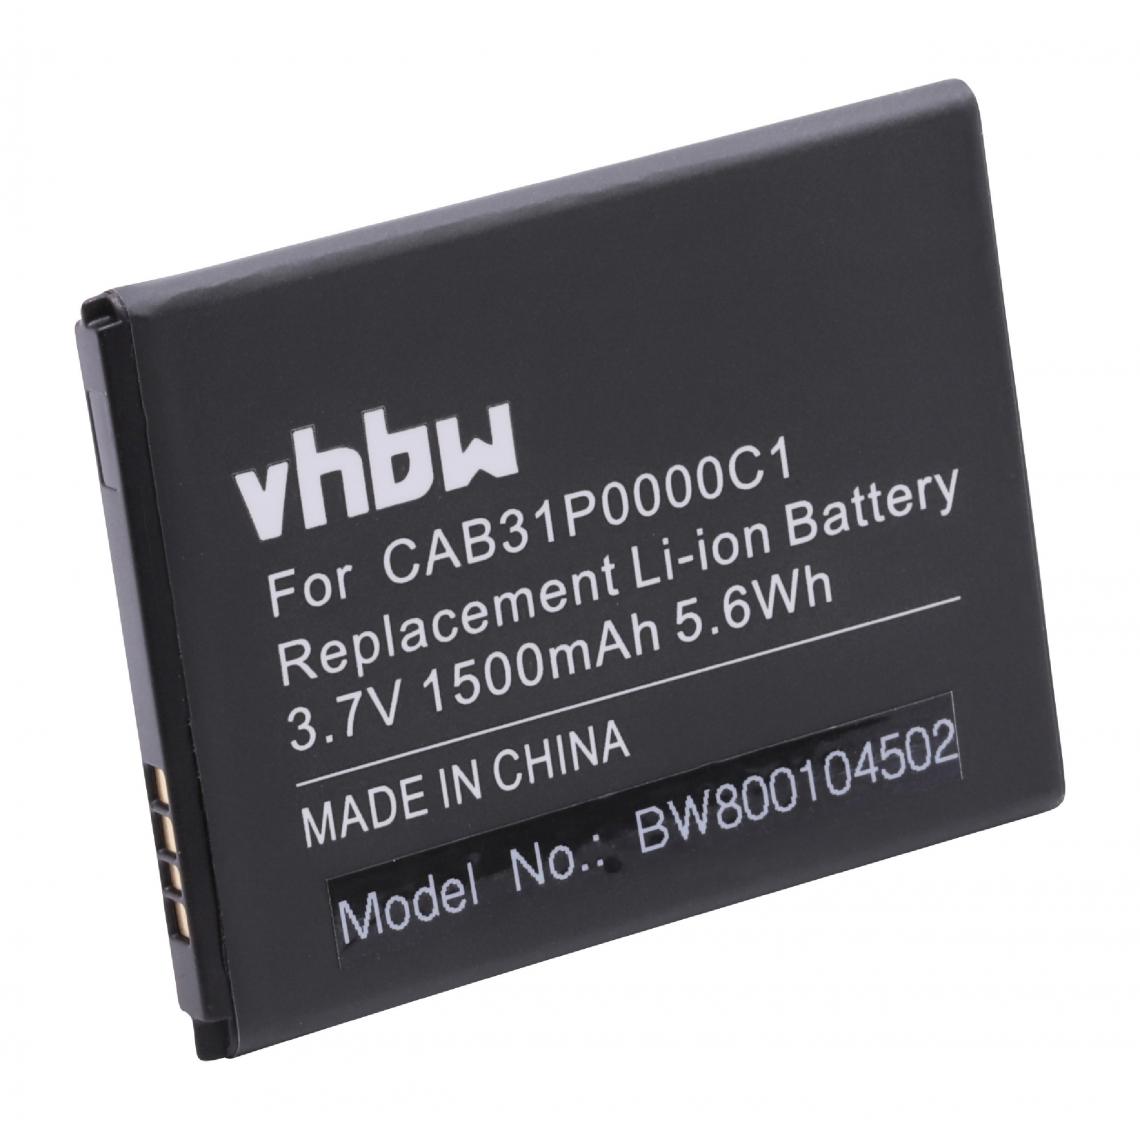 Vhbw - vhbw Li-Ion batterie 1500mAh (3.7V) pour portable Smartphone téléphone USCellular ADR3035, One Touch Premiere comme BY71, CAB31P0000C1. - Batterie téléphone